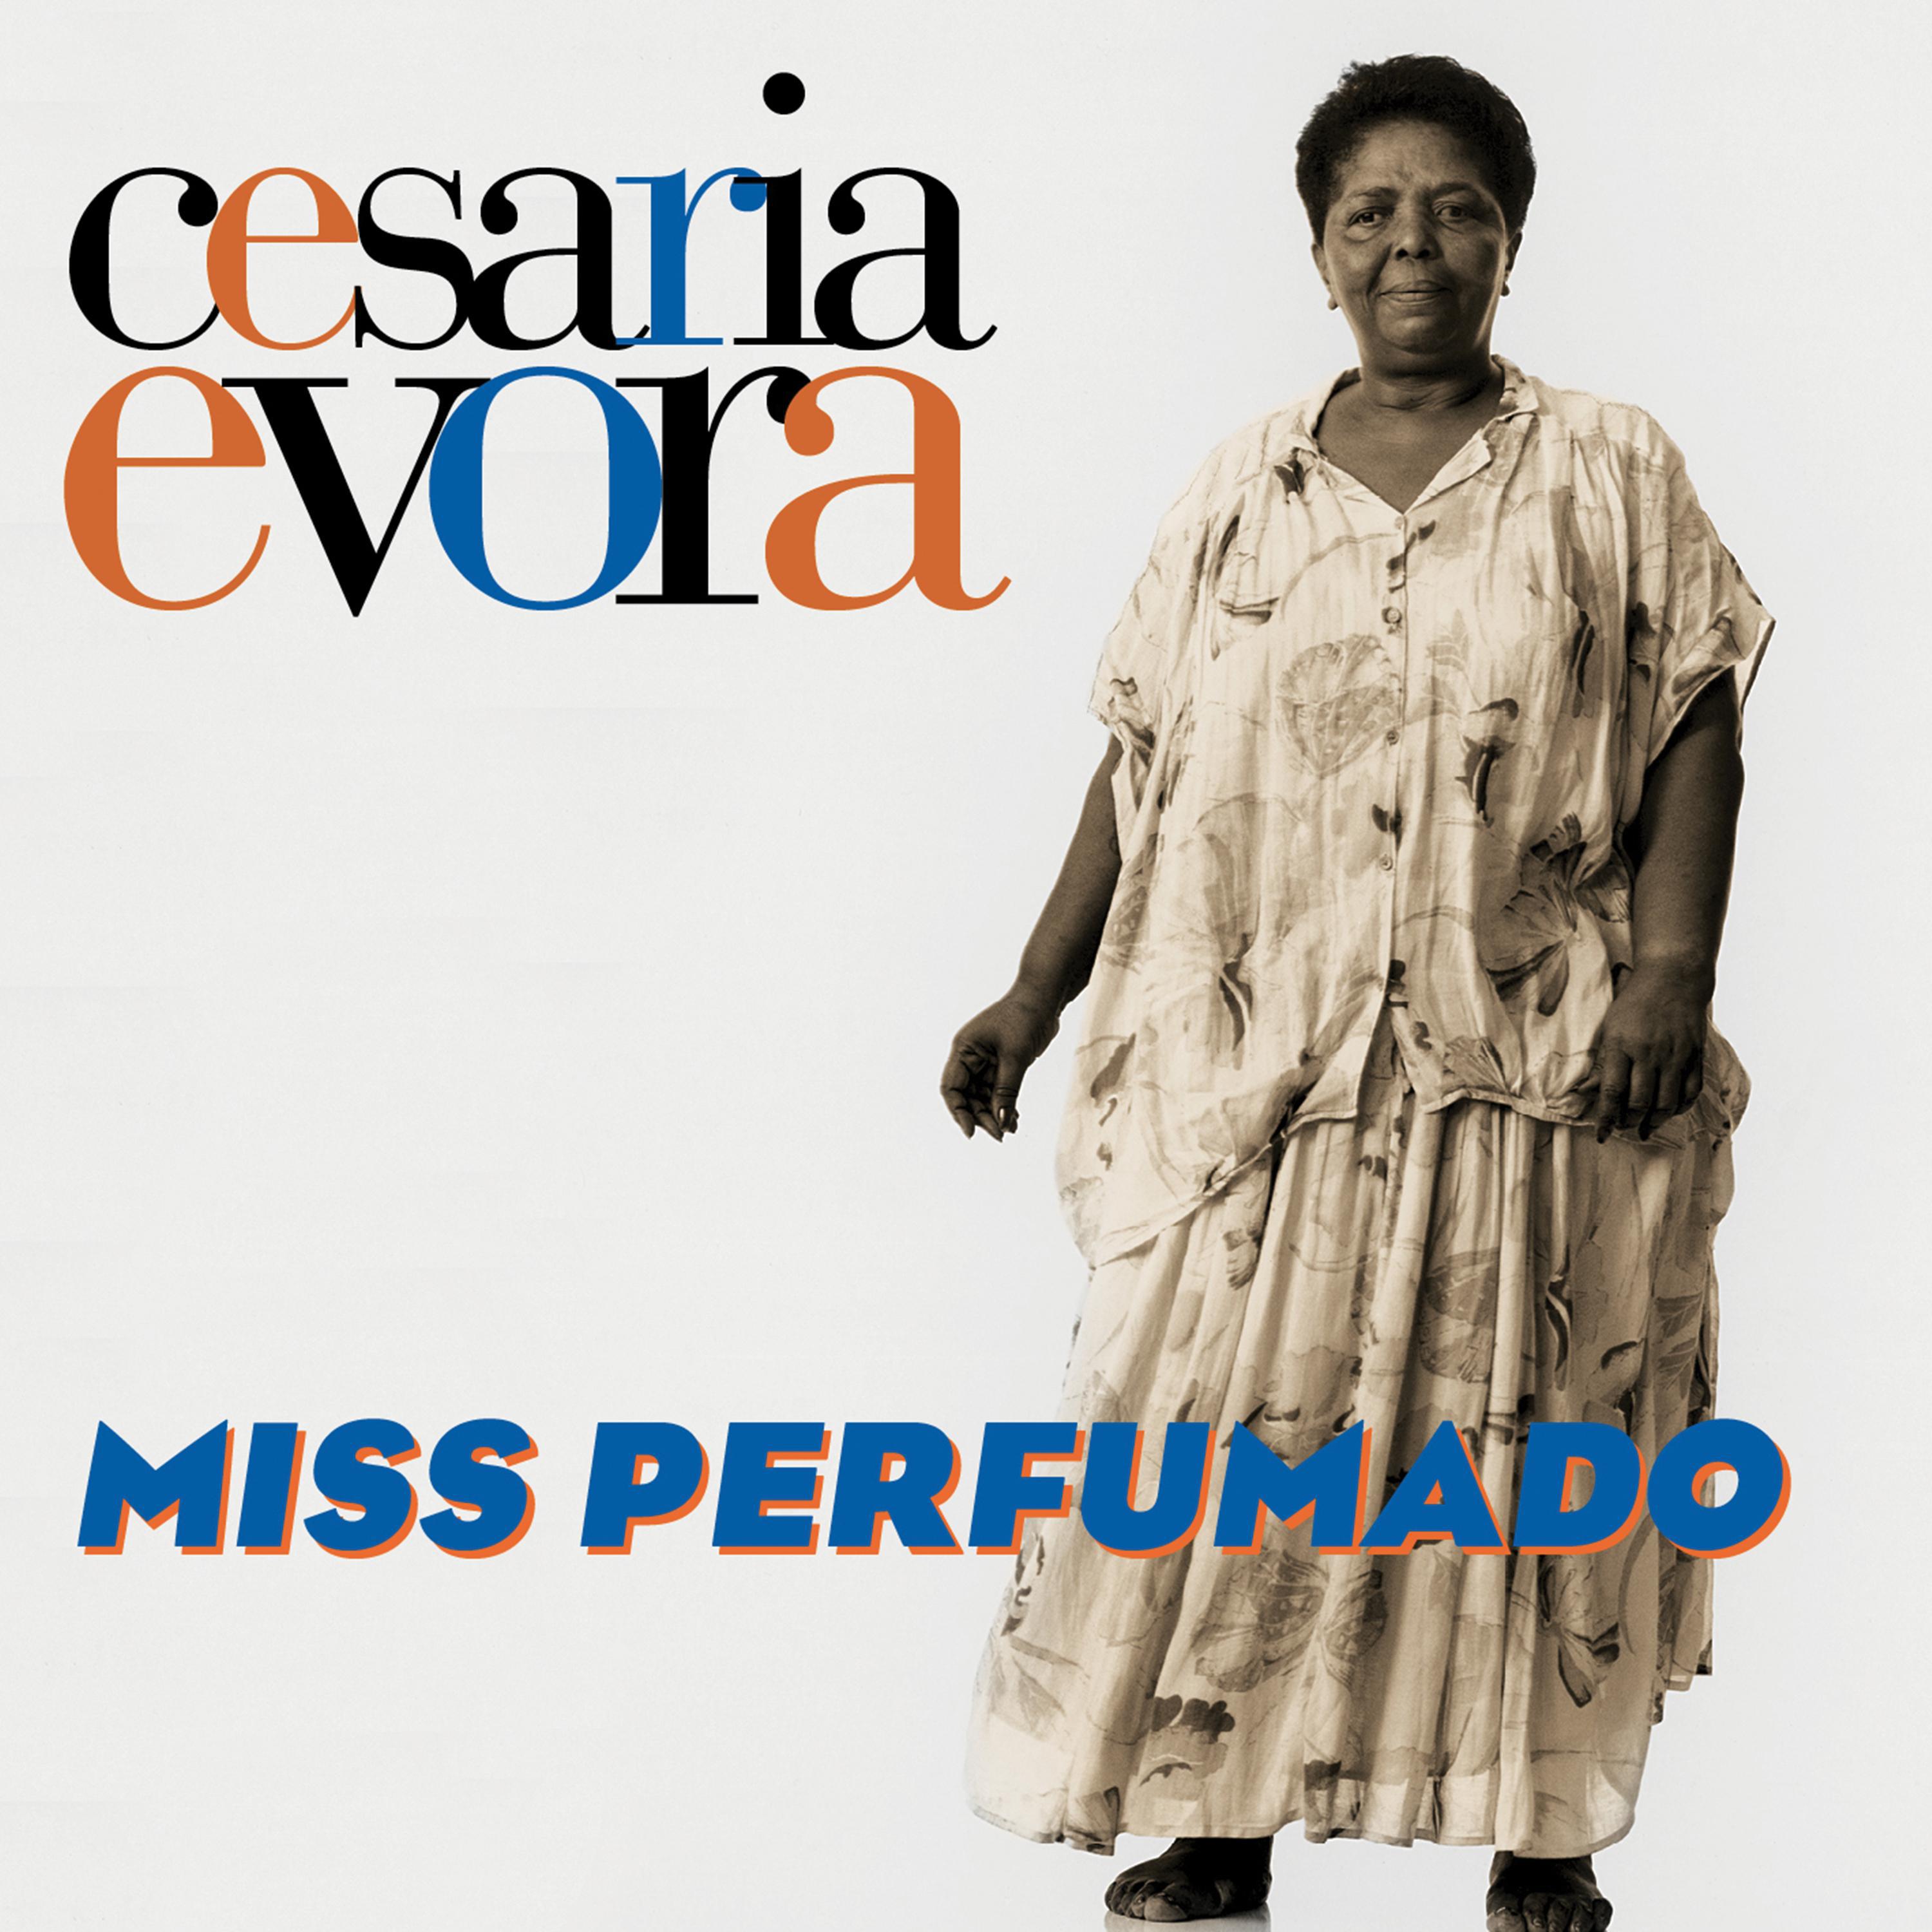 Sodade歌词 歌手Césaria Évora-专辑Miss Perfumado-单曲《Sodade》LRC歌词下载